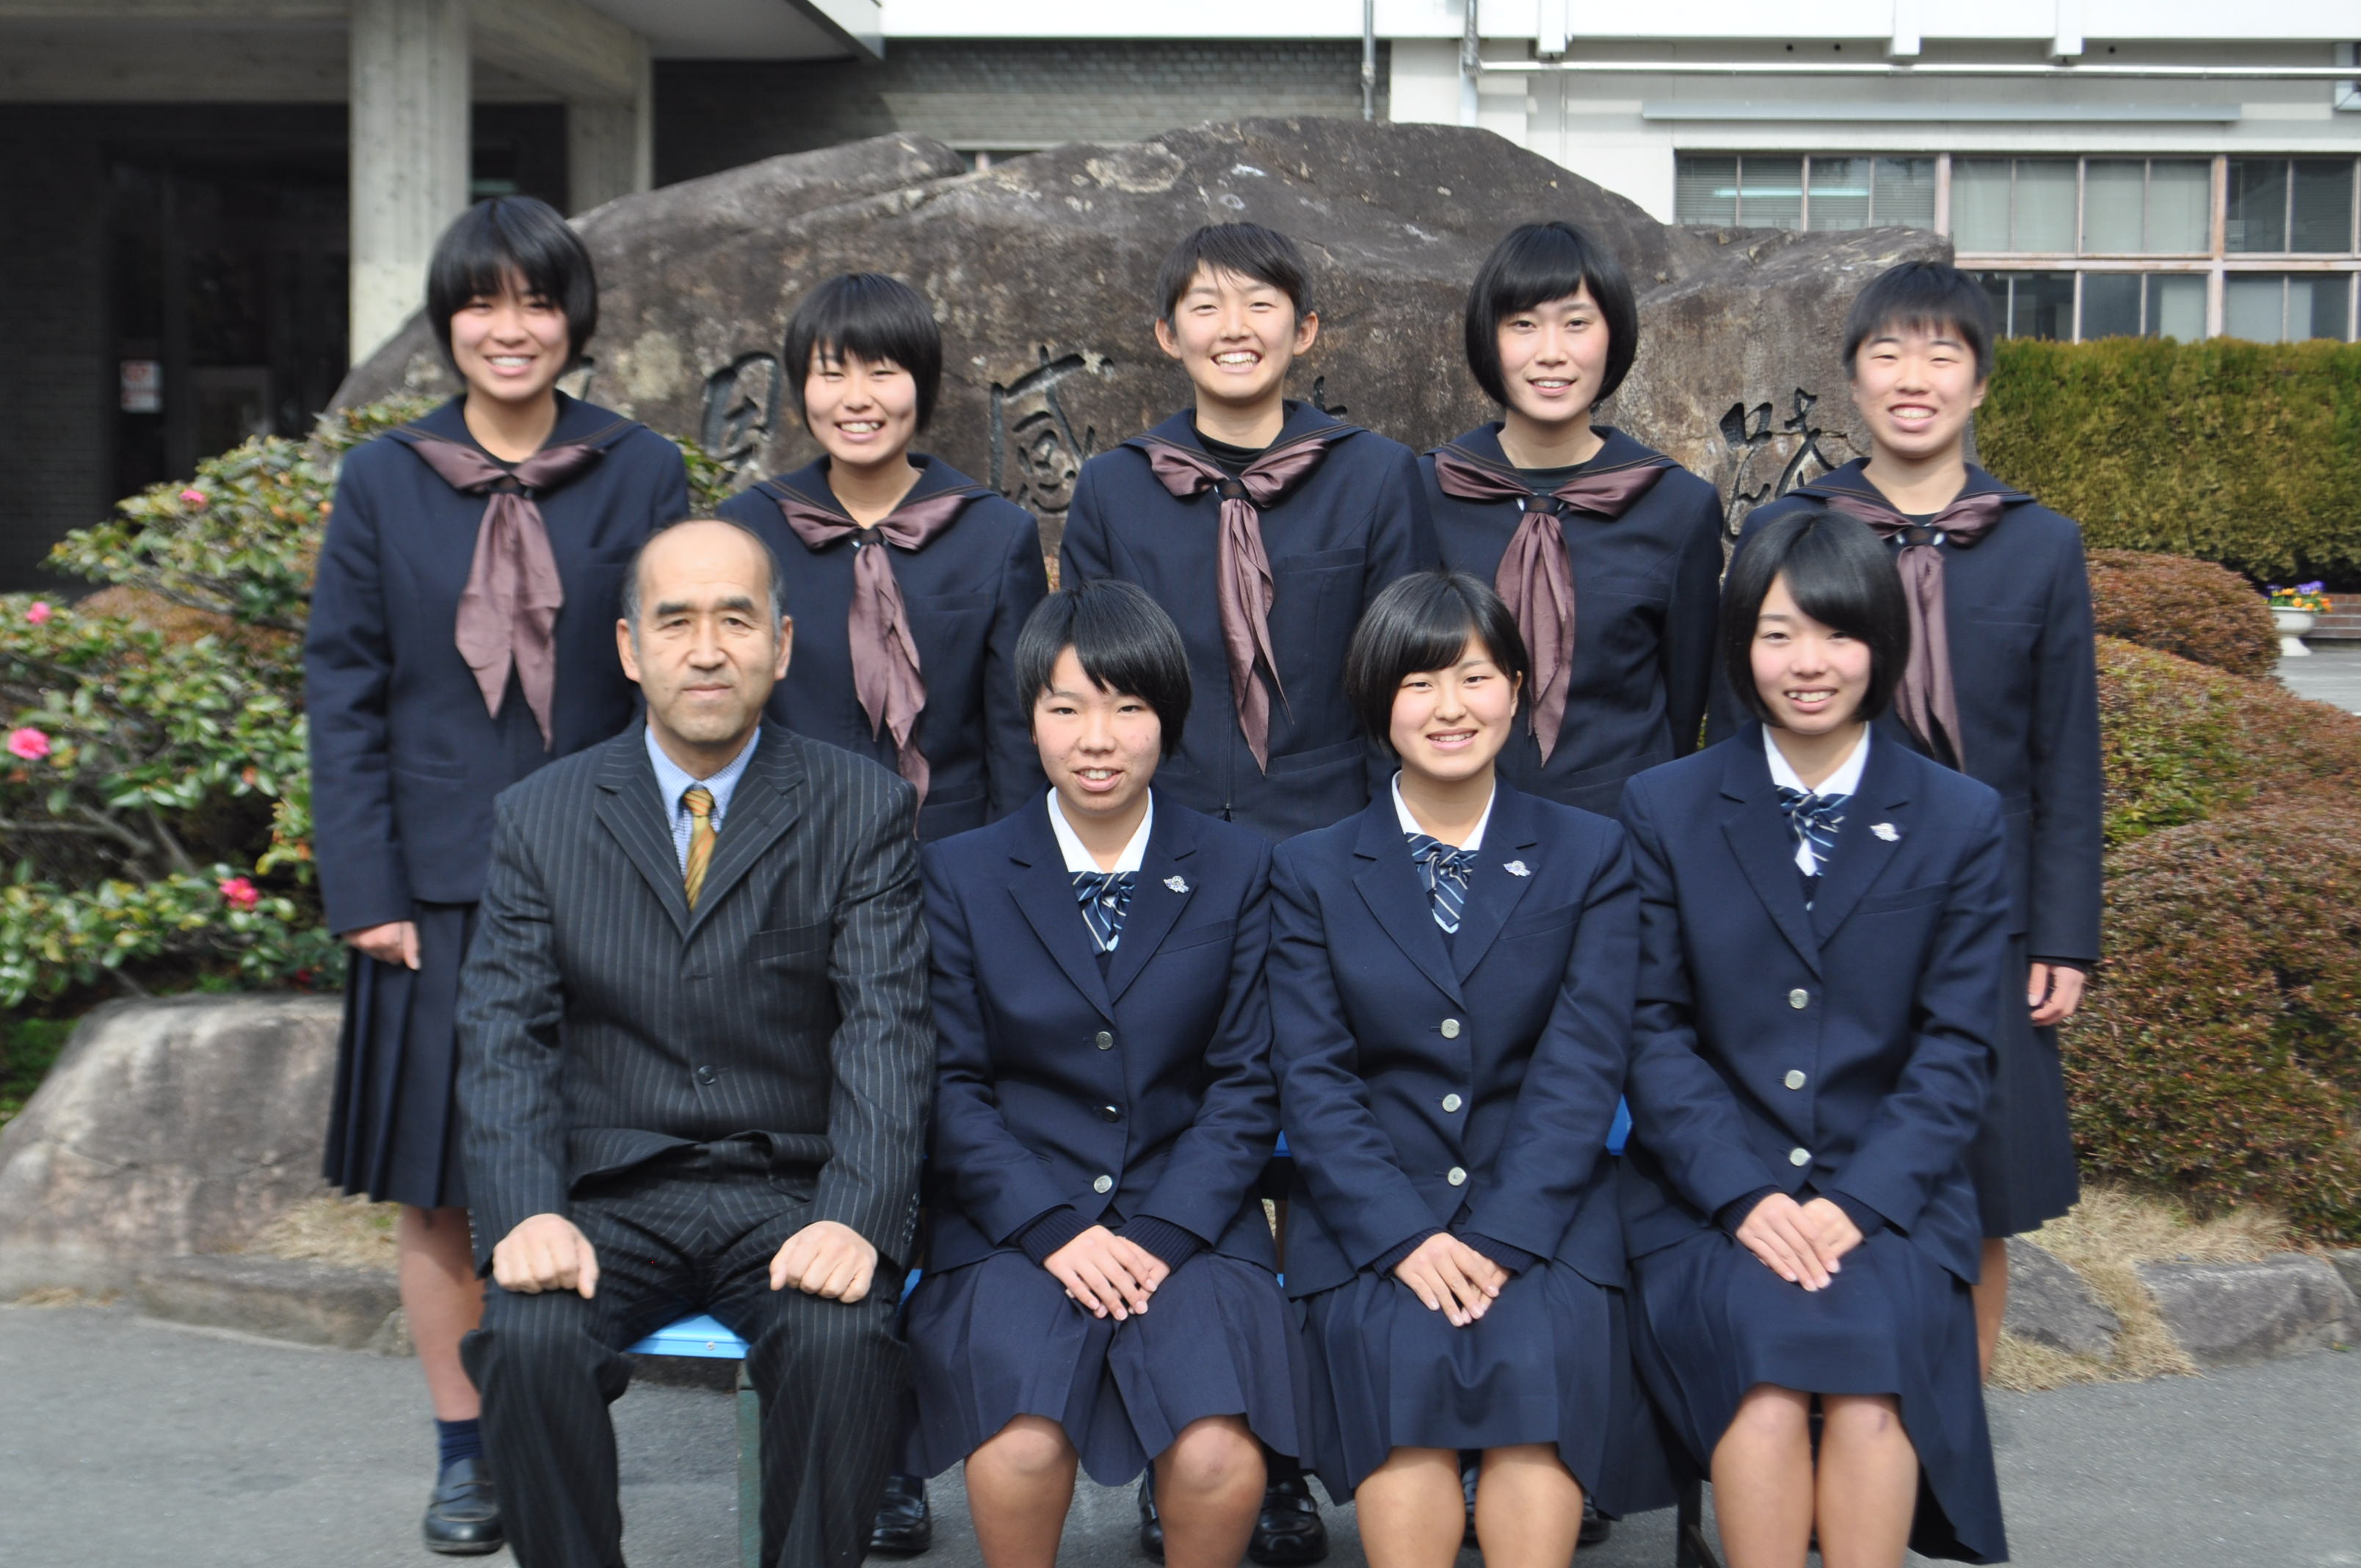 日本女子大学 付属 高校 校歌 デート